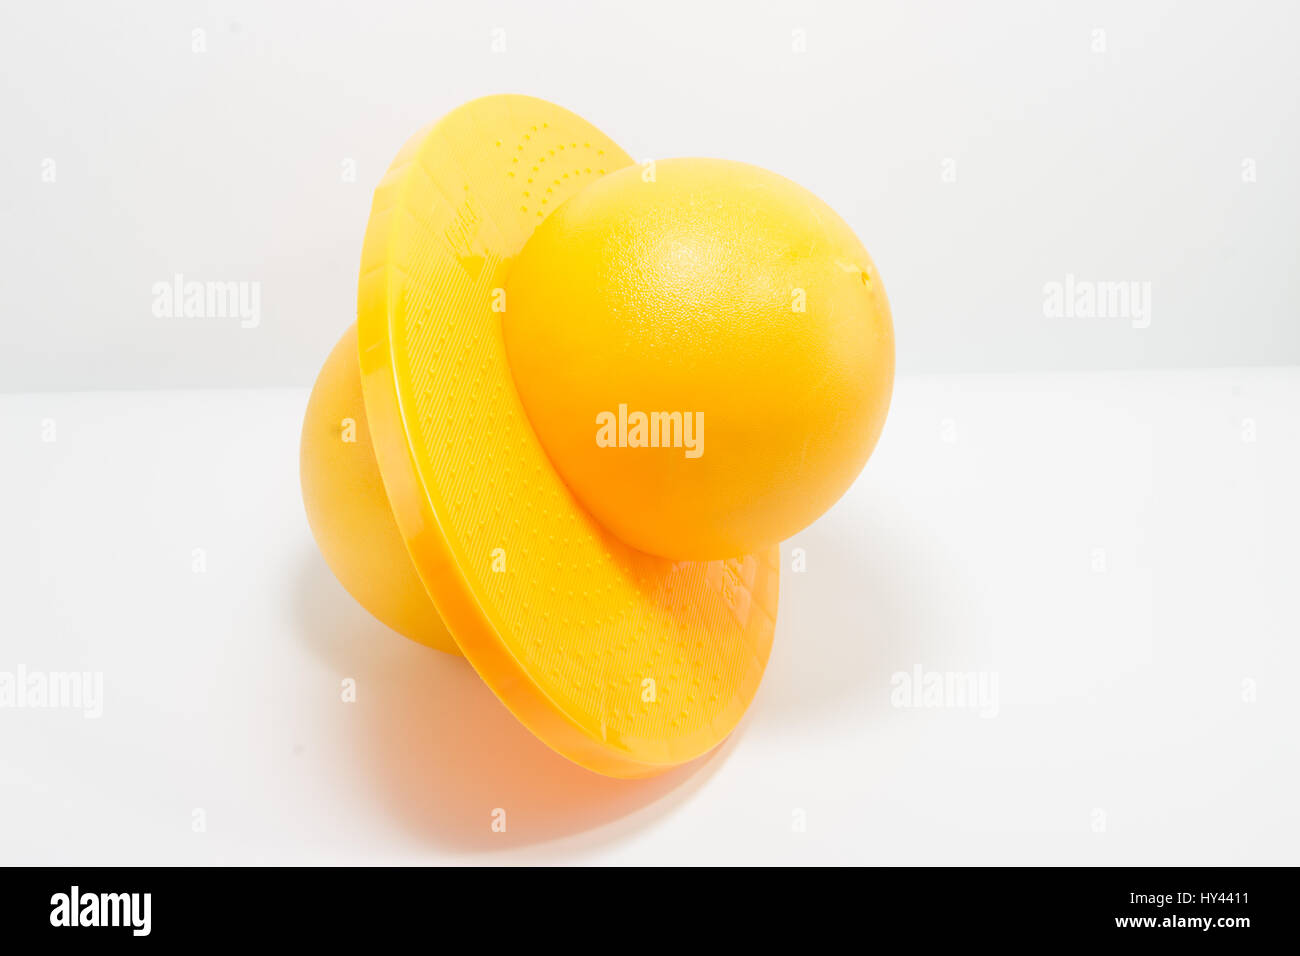 Pogoball, Rock N tramoggia, Balance Board, Pogo Lolo, arancione con sfondo bianco Foto Stock